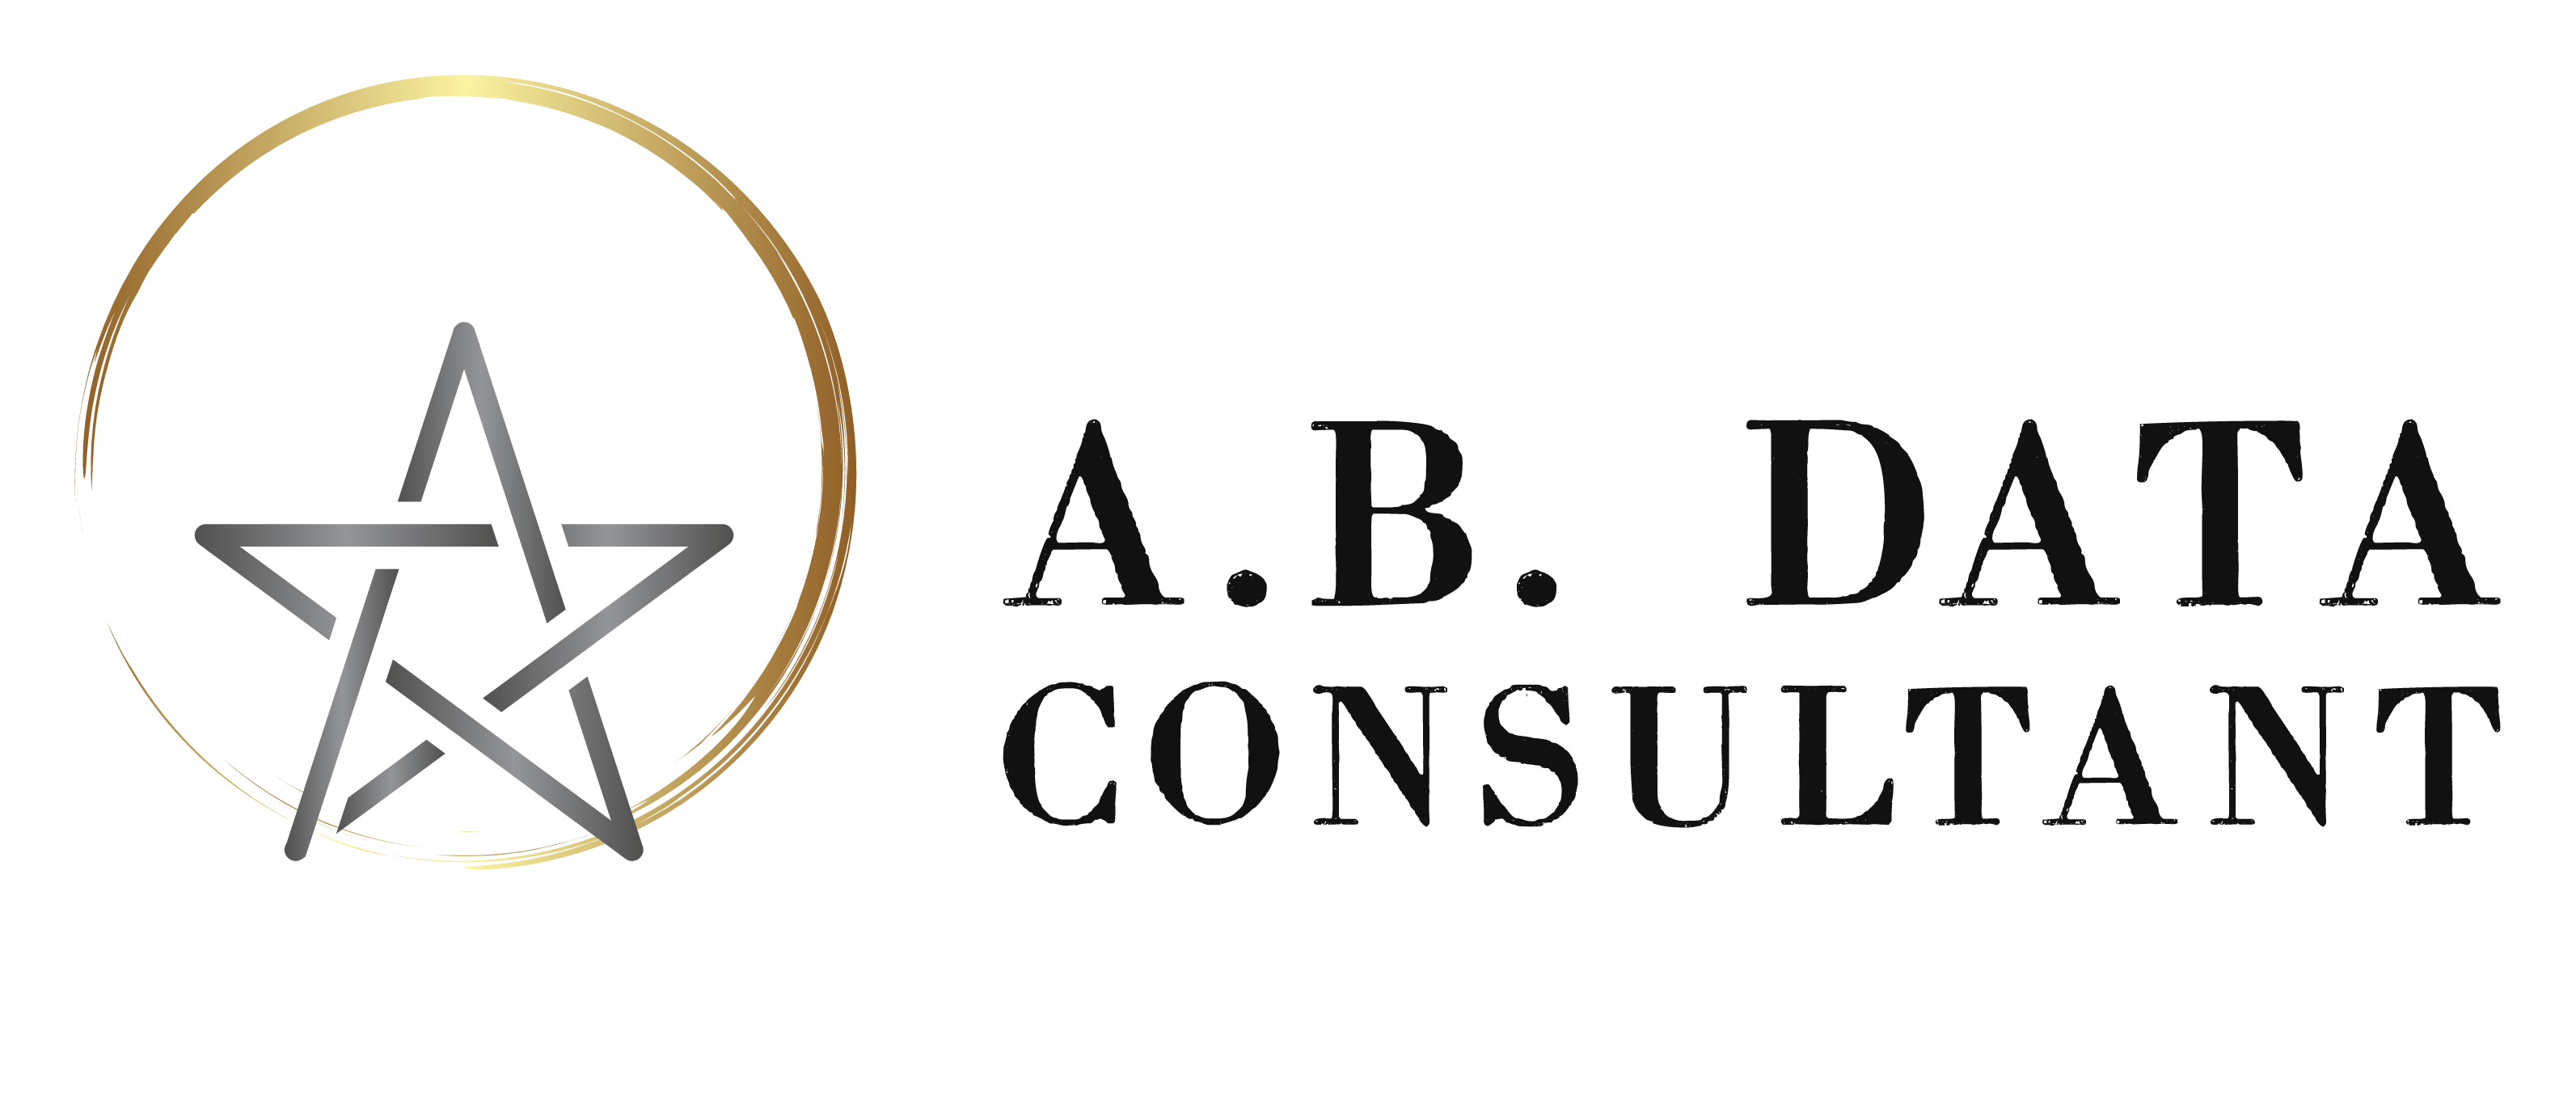 AB Data Consultant